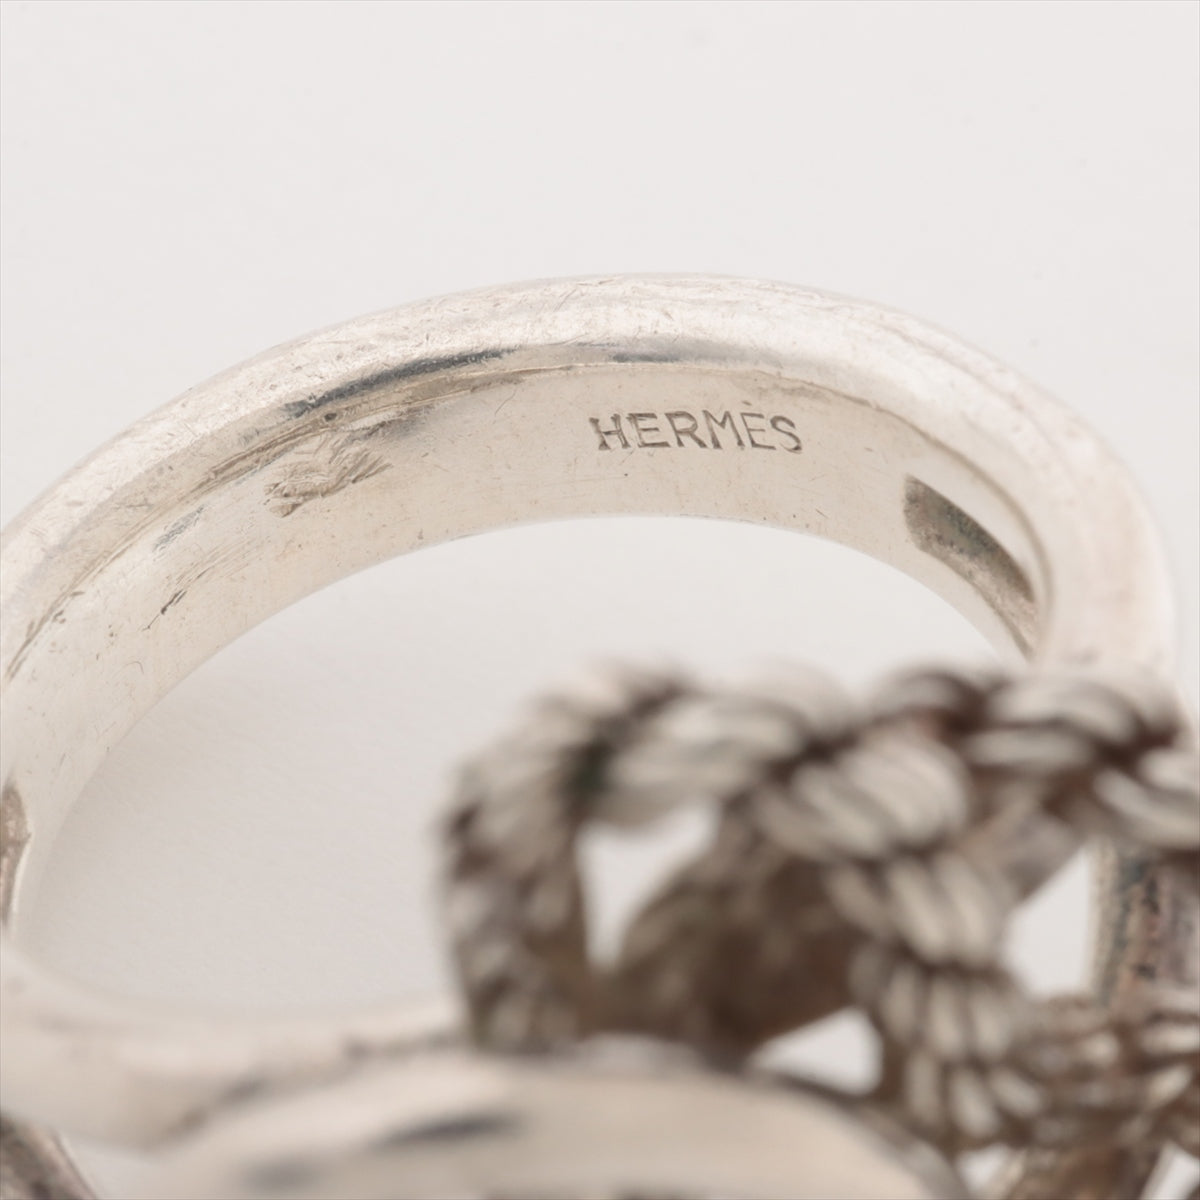 Hermès rings 925 10.2g Silver